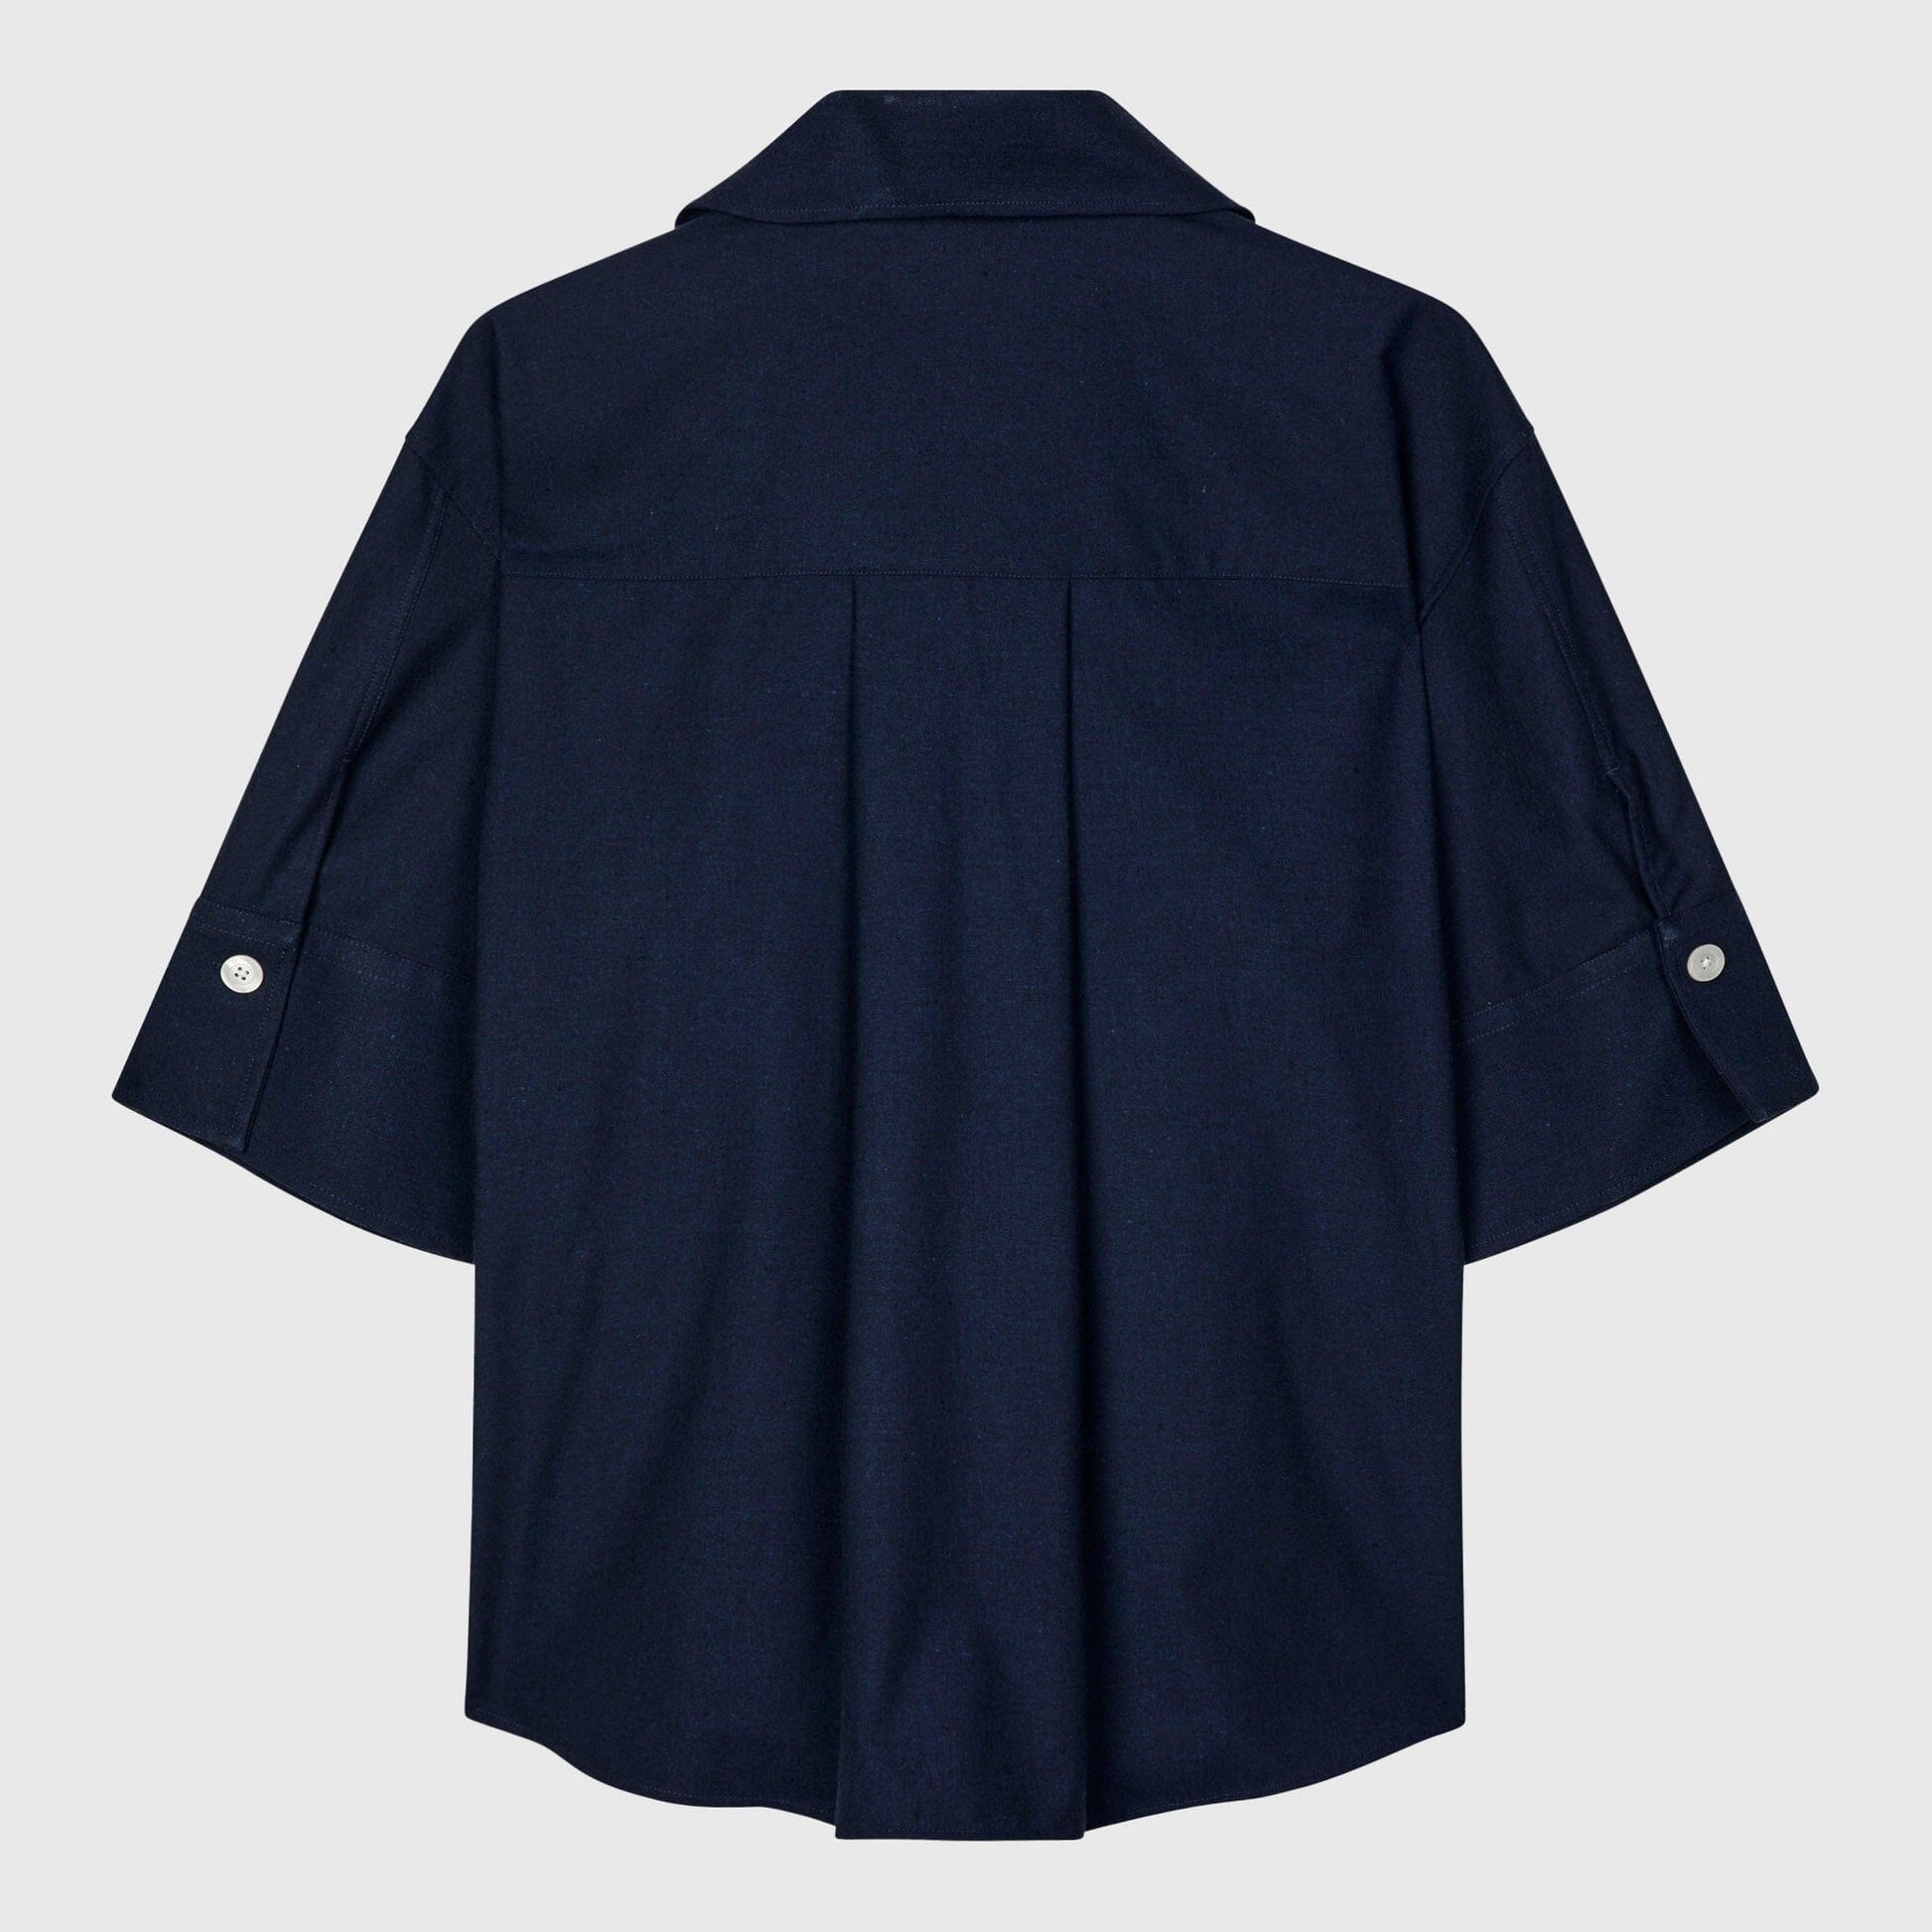 Libertine-Libertine Grace Shirt - Dark Navy Shirt Libertine-Libertine 